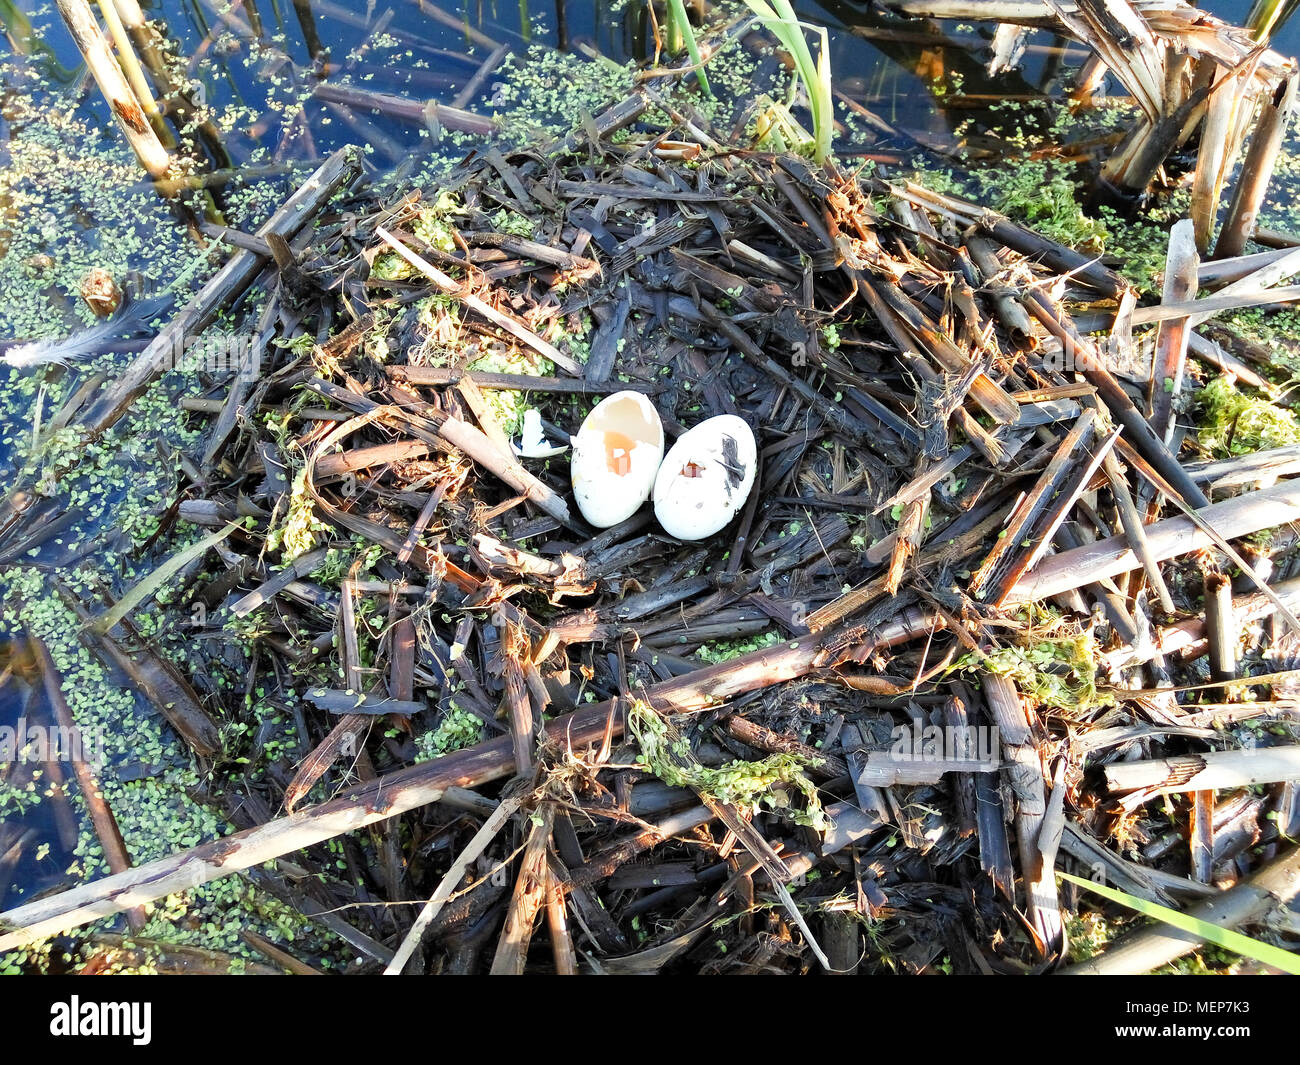 Podiceps cristatus. Das Nest der Haubentaucher in der Natur. Stockfoto